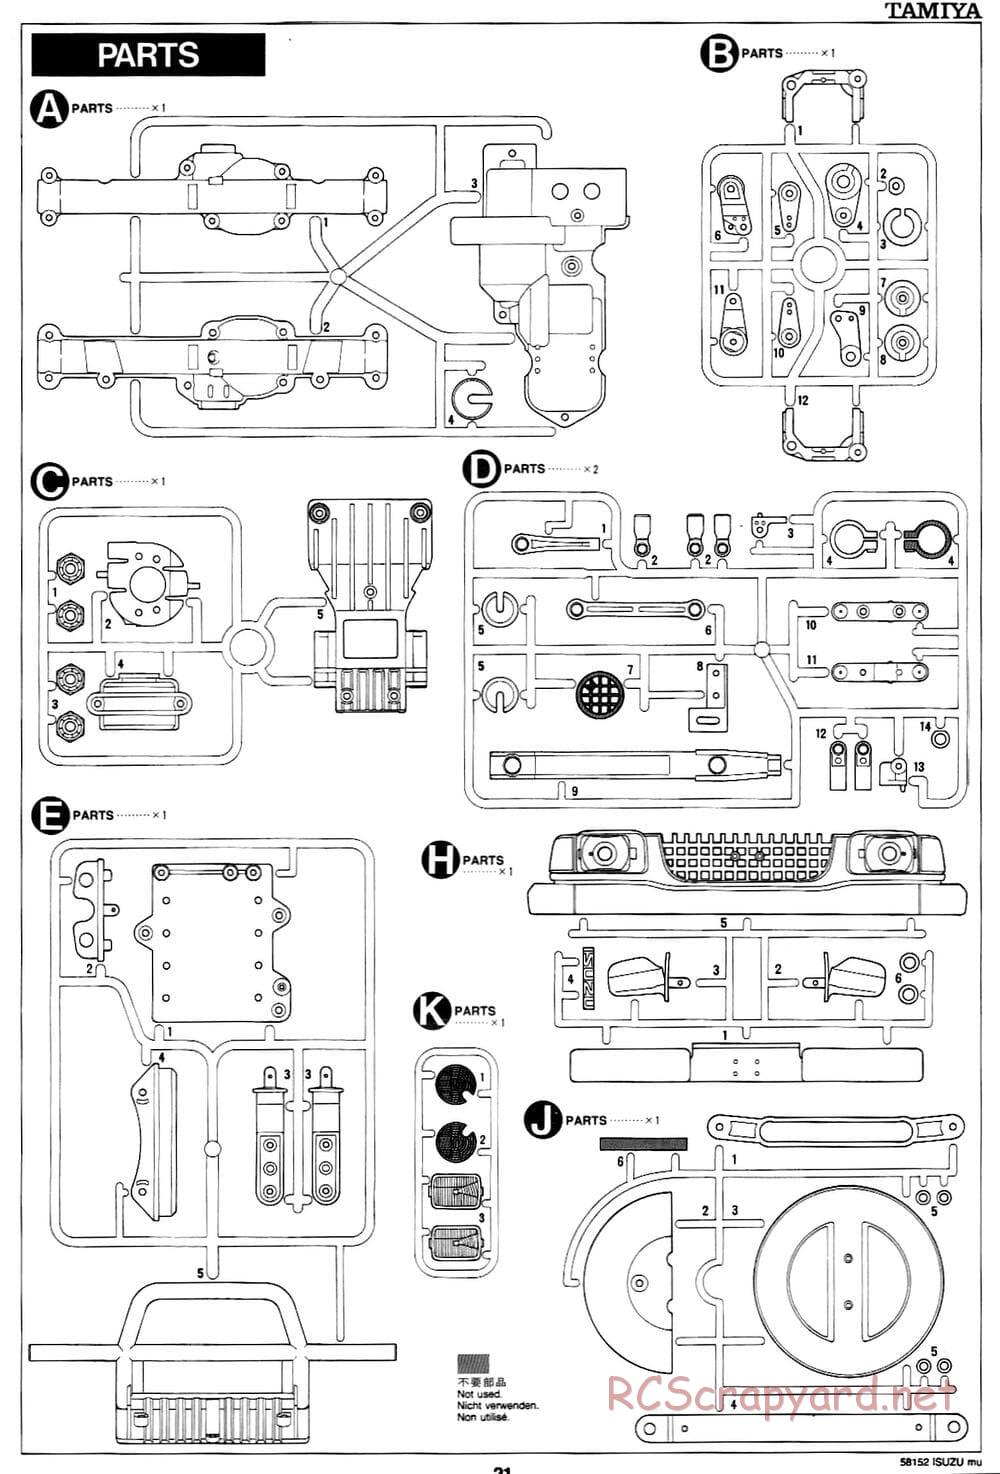 Tamiya - Isuzu Mu - CC-01 Chassis - Manual - Page 21